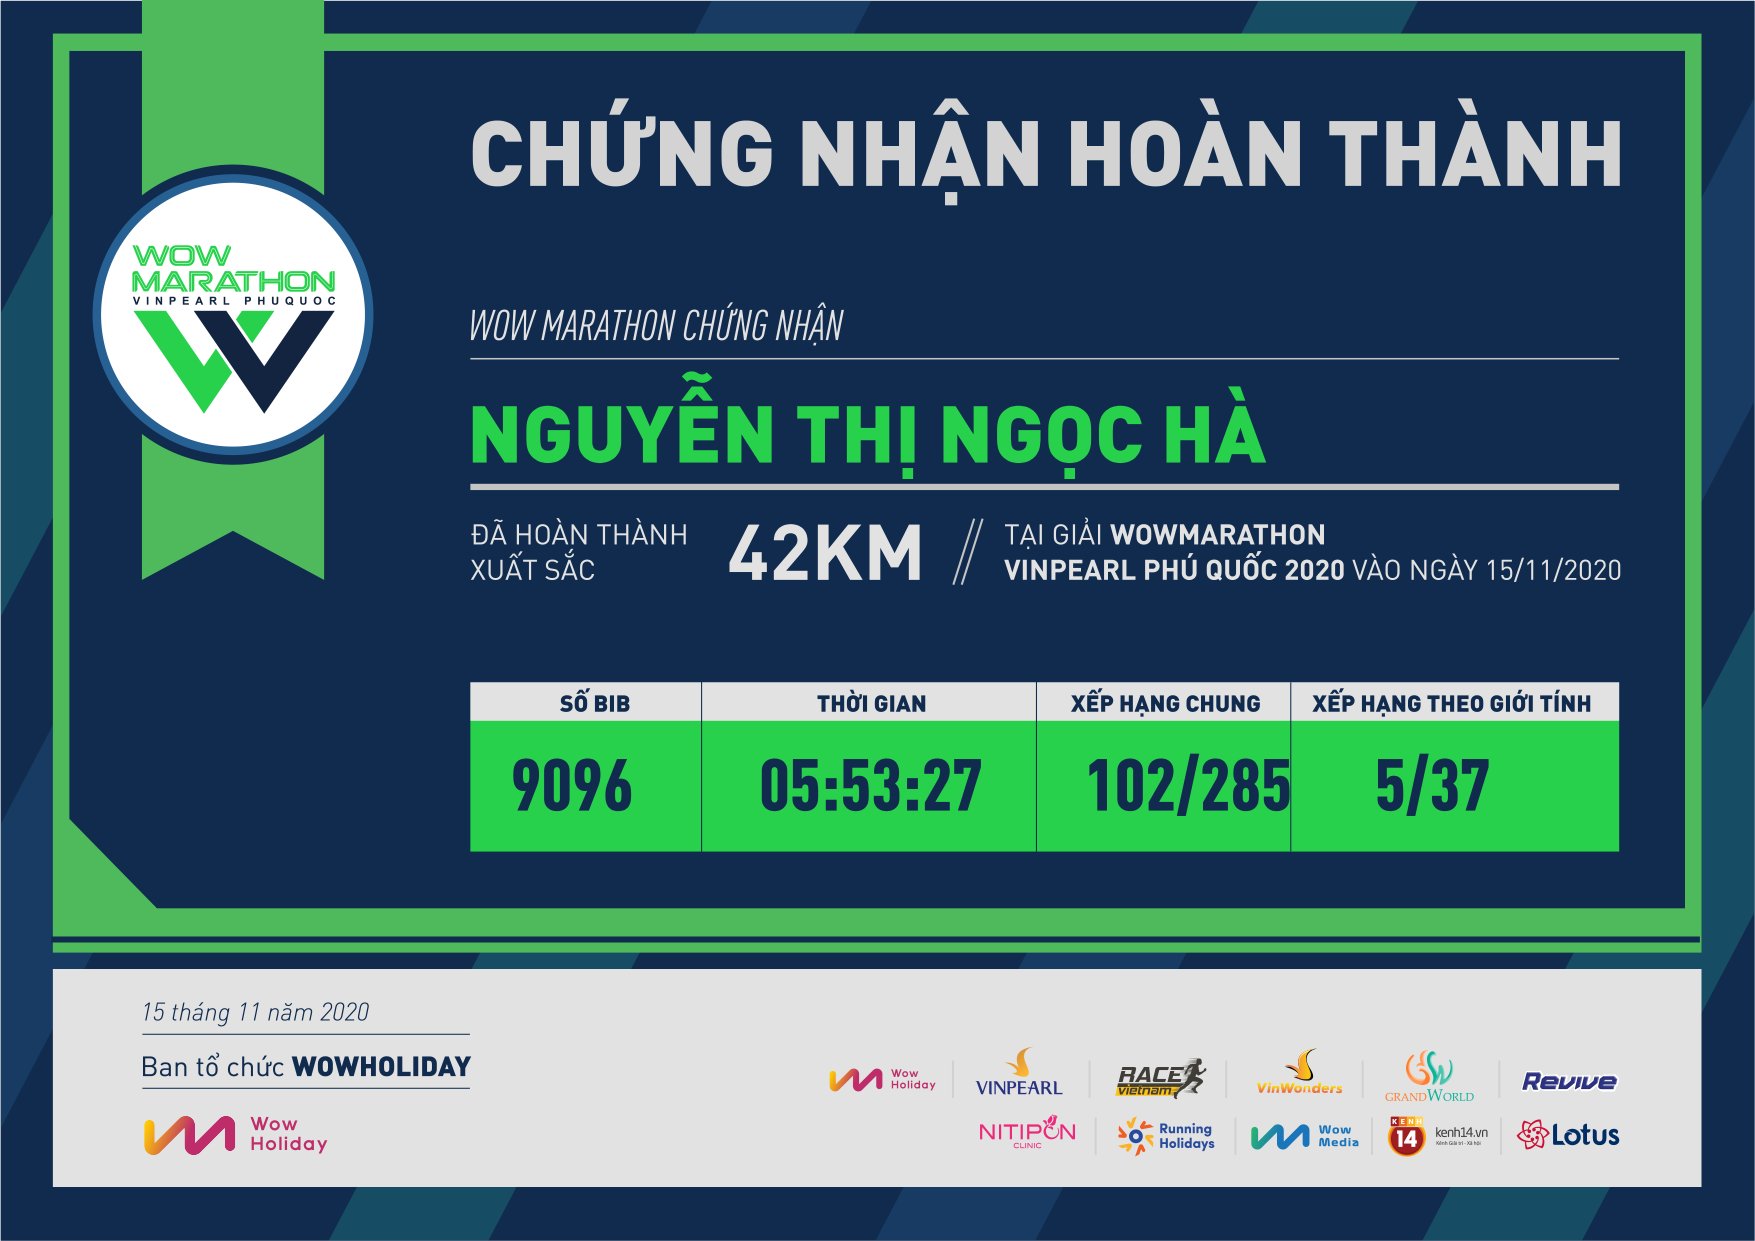 9096 - Nguyễn Thị Ngọc Hà